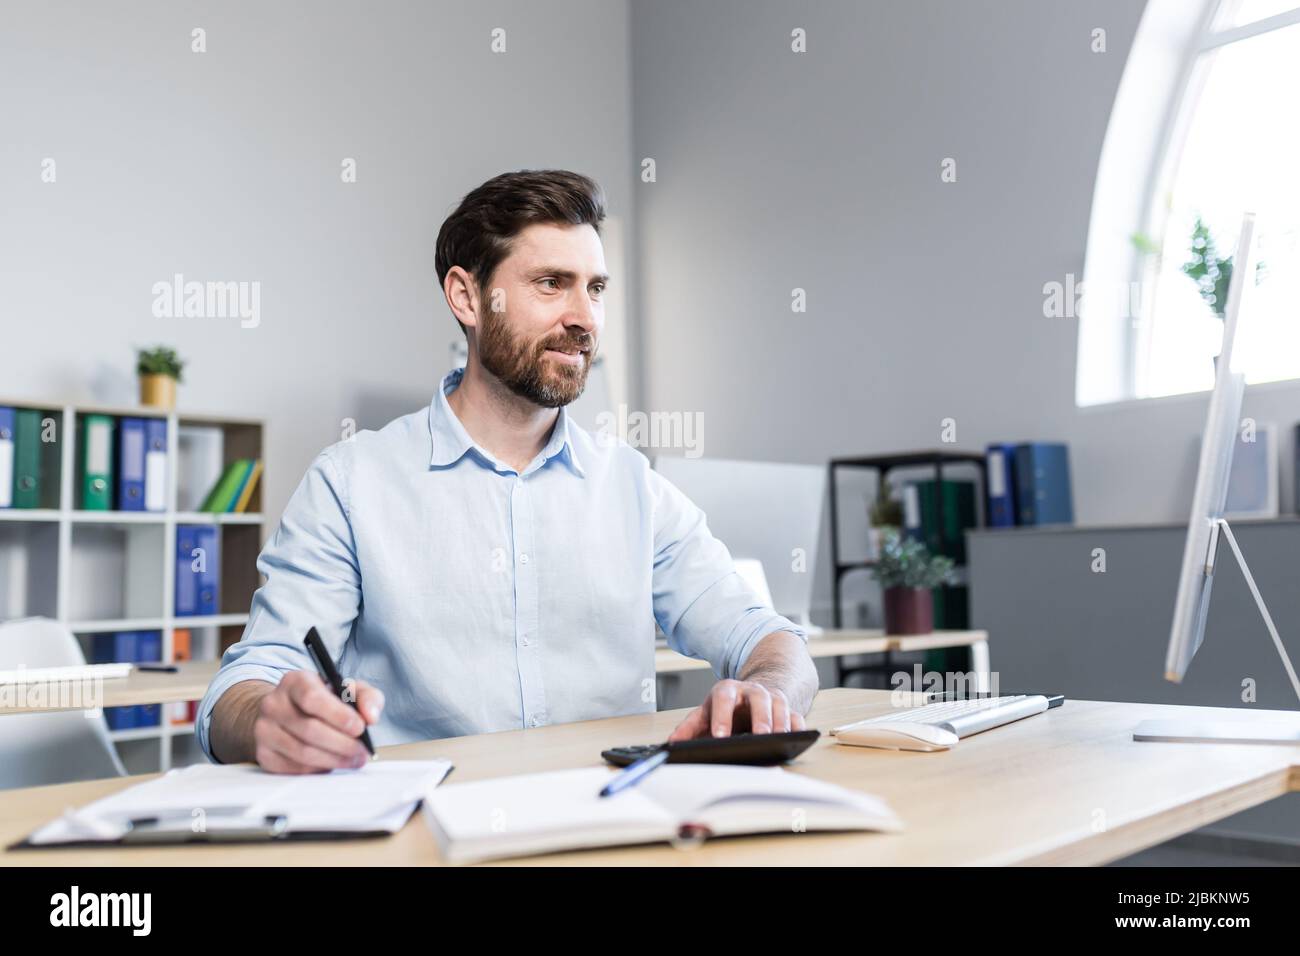 Porträt eines jungen Mannes. Buchhalter, Ökonom, Finanzierer. Setzt auf einen Rechner, sitzt am Schreibtisch am Computer, arbeitet mit Dokumenten Stockfoto